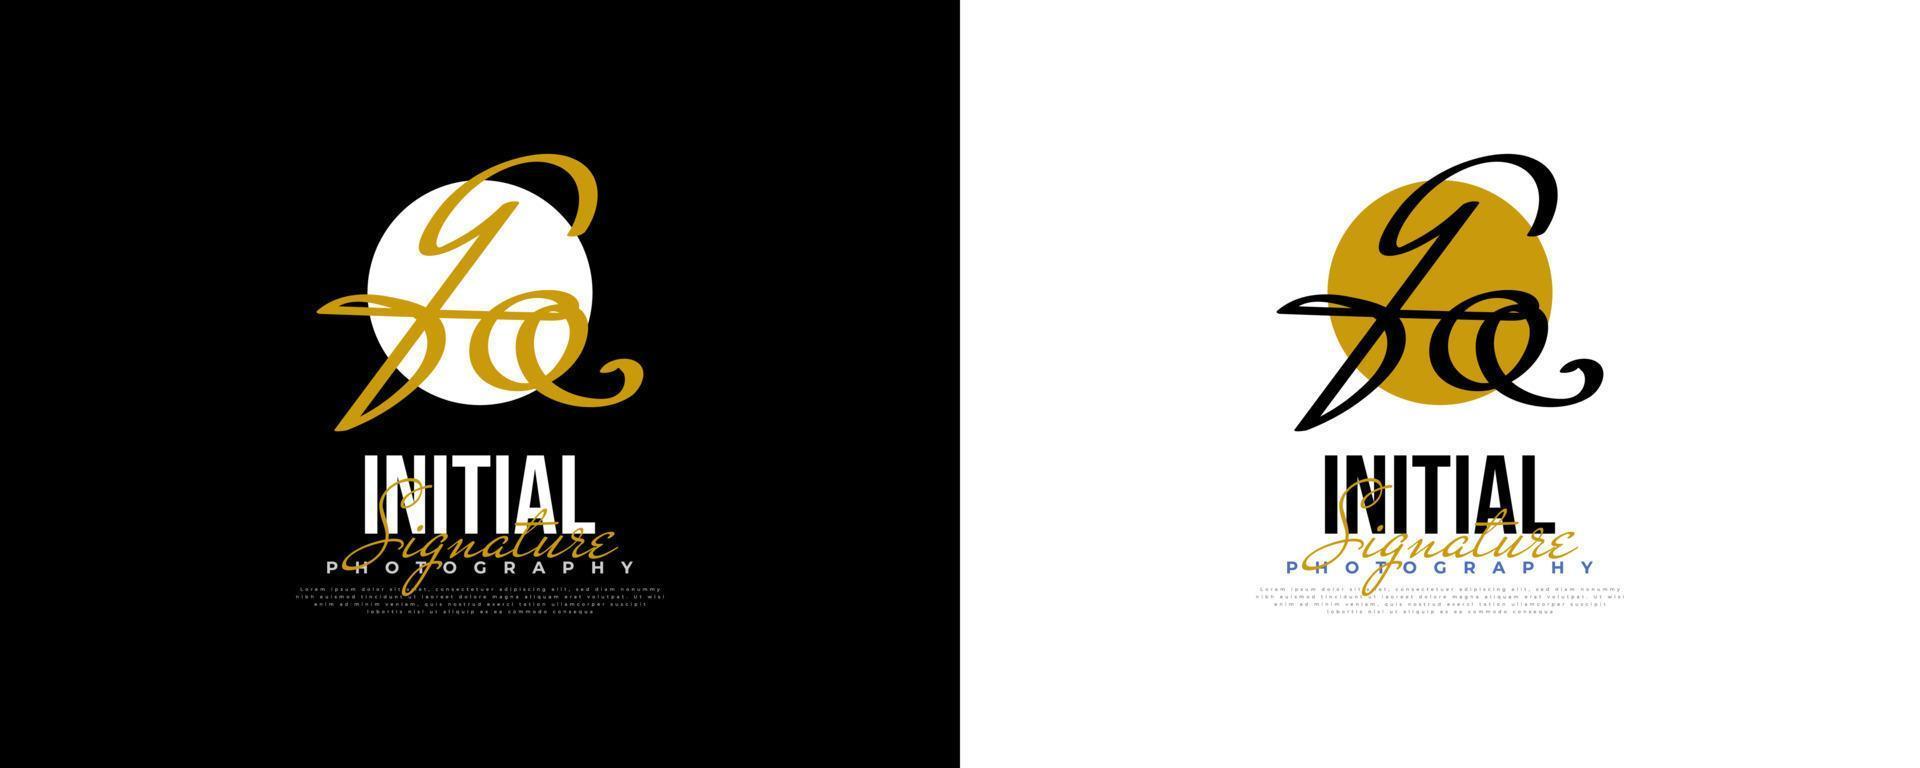 diseño inicial del logotipo g y q en un estilo de escritura elegante y minimalista. logotipo o símbolo de la firma gq para bodas, moda, joyería, boutique e identidad comercial vector